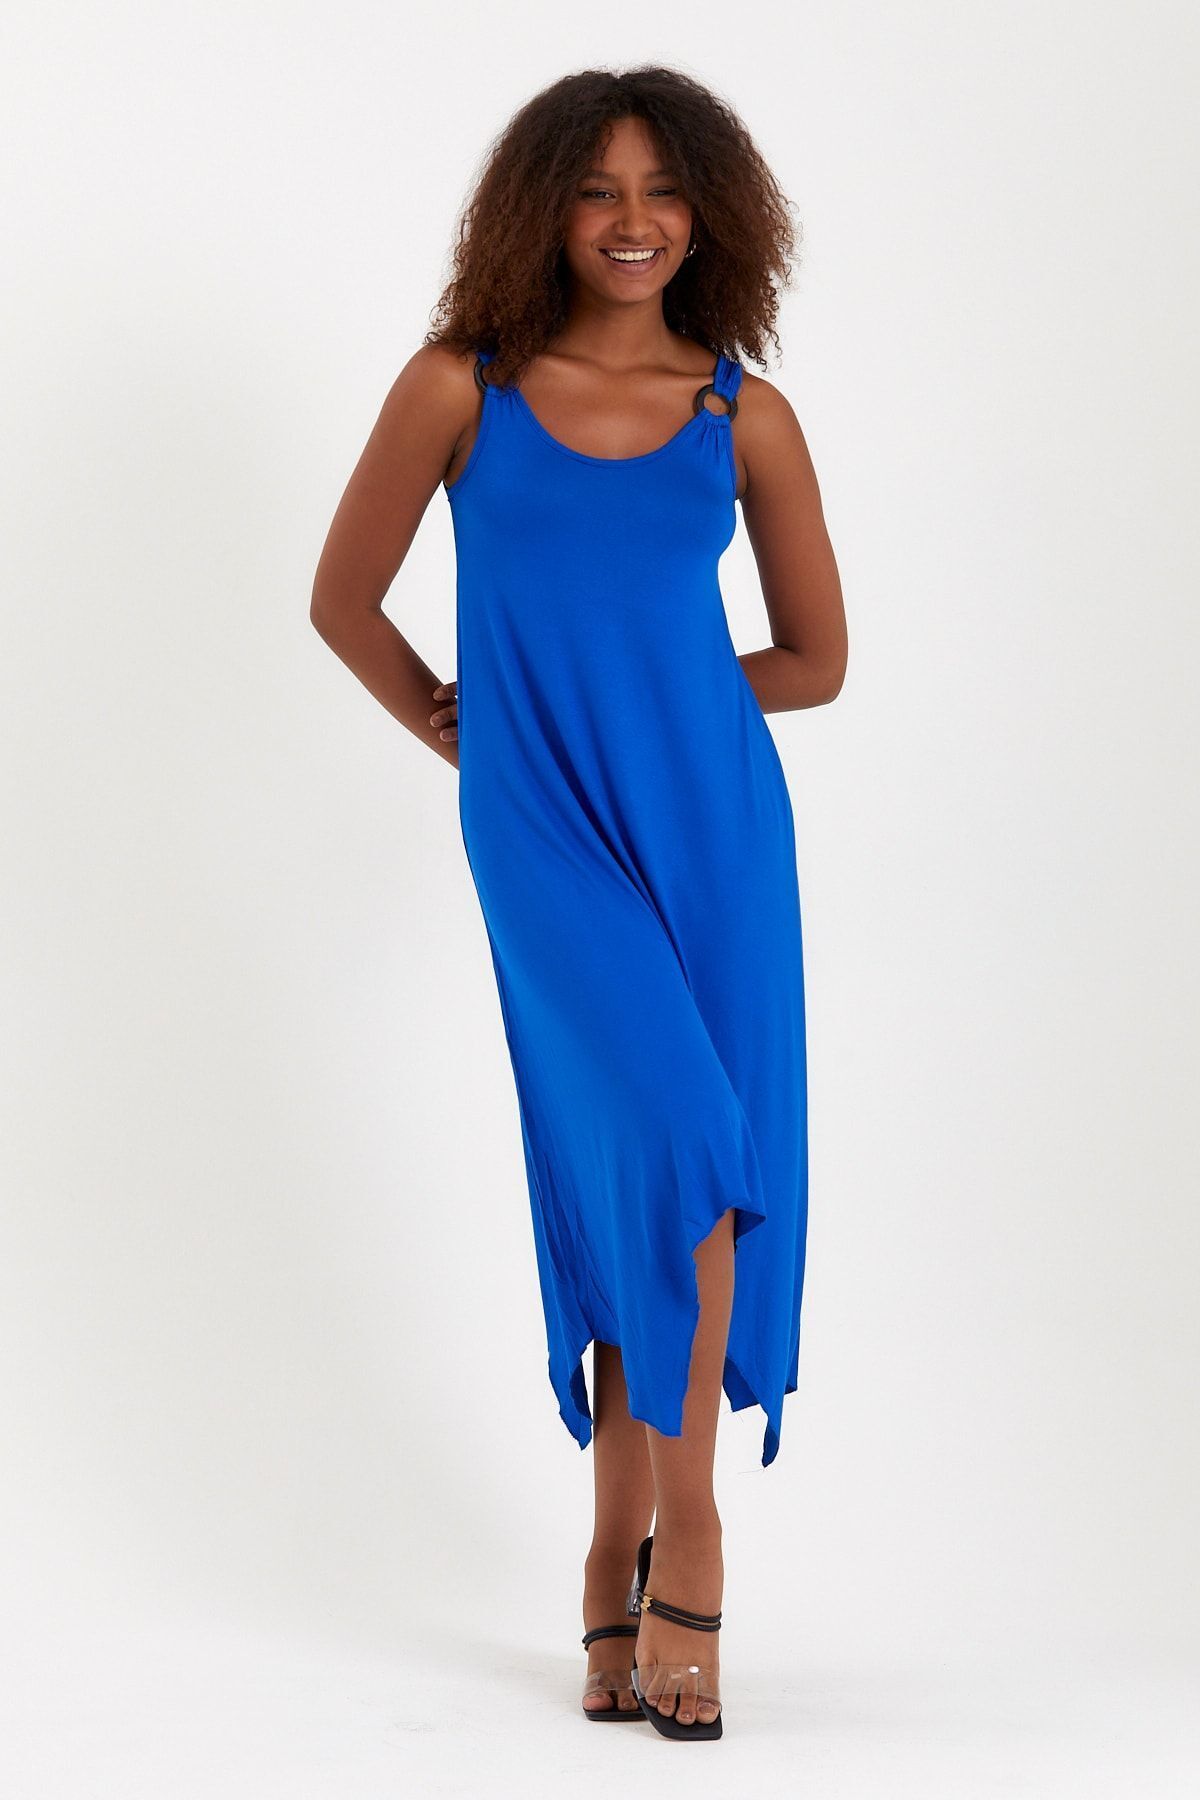 Meba Mavi Yazlık Kalın Askılı Asimetrik Kesim Likralı Penye Elbise